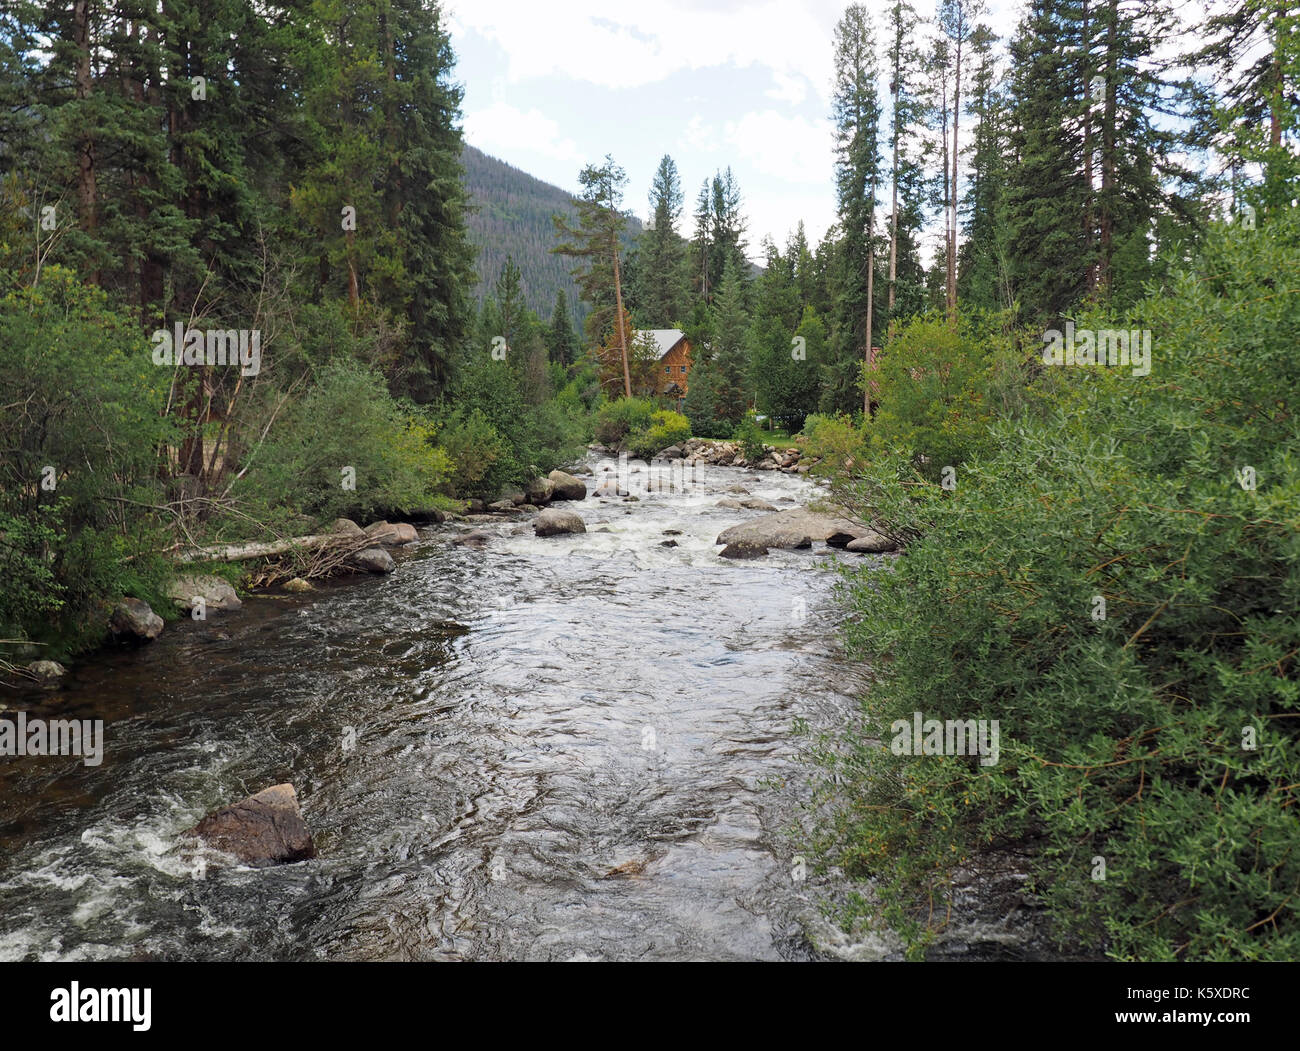 Ein kleiner Bach oder Fluss verläuft durch ein Waldgebiet in der Nähe von Grand Lake in Colorado. Der Stream ist von Bäumen und einem Log Cabin home umgeben. Im hinterg Stockfoto